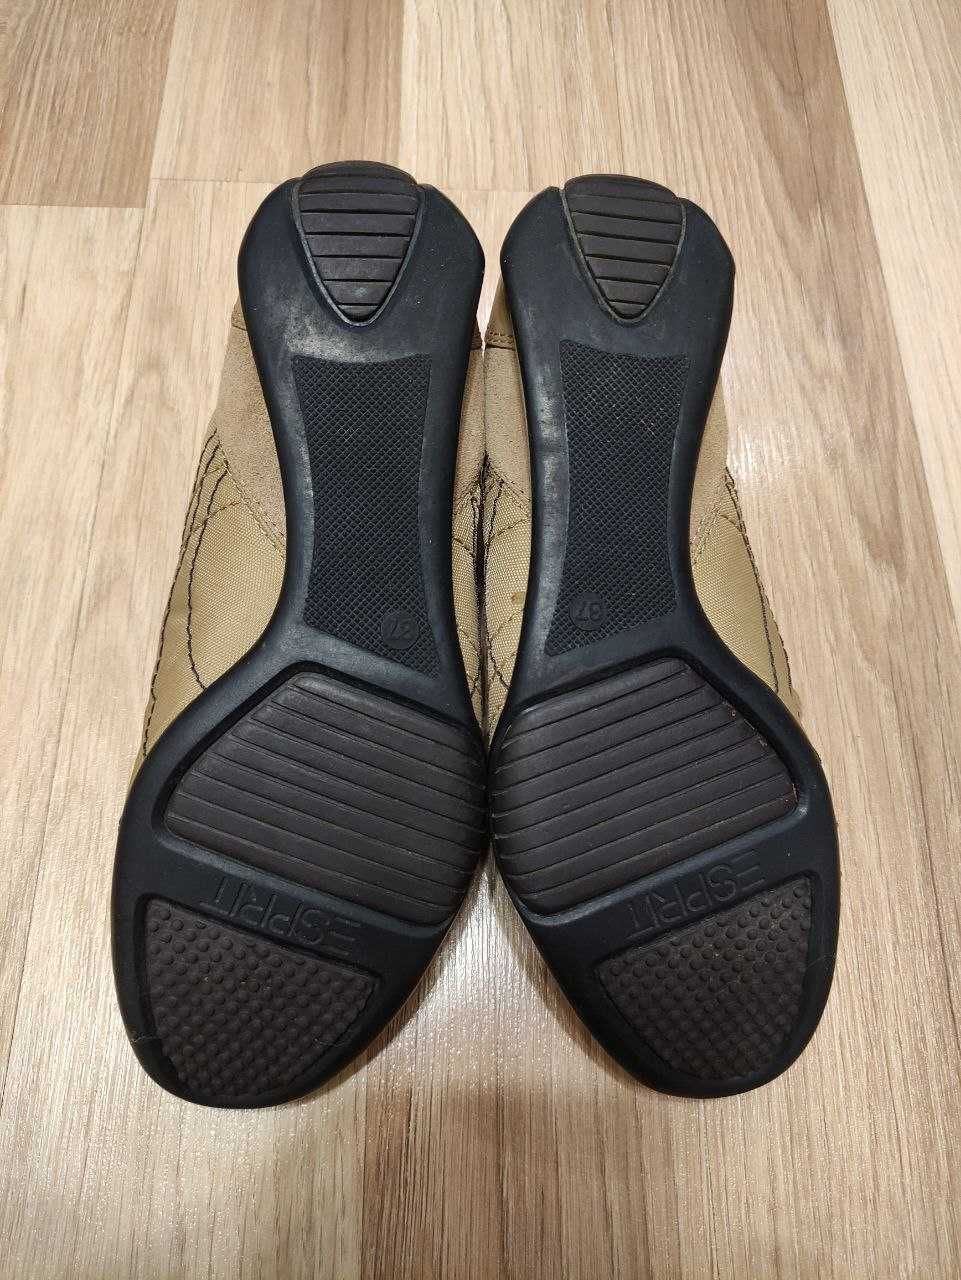 Продам женские кроссовки Esprit, новые, оригинал, размер 37